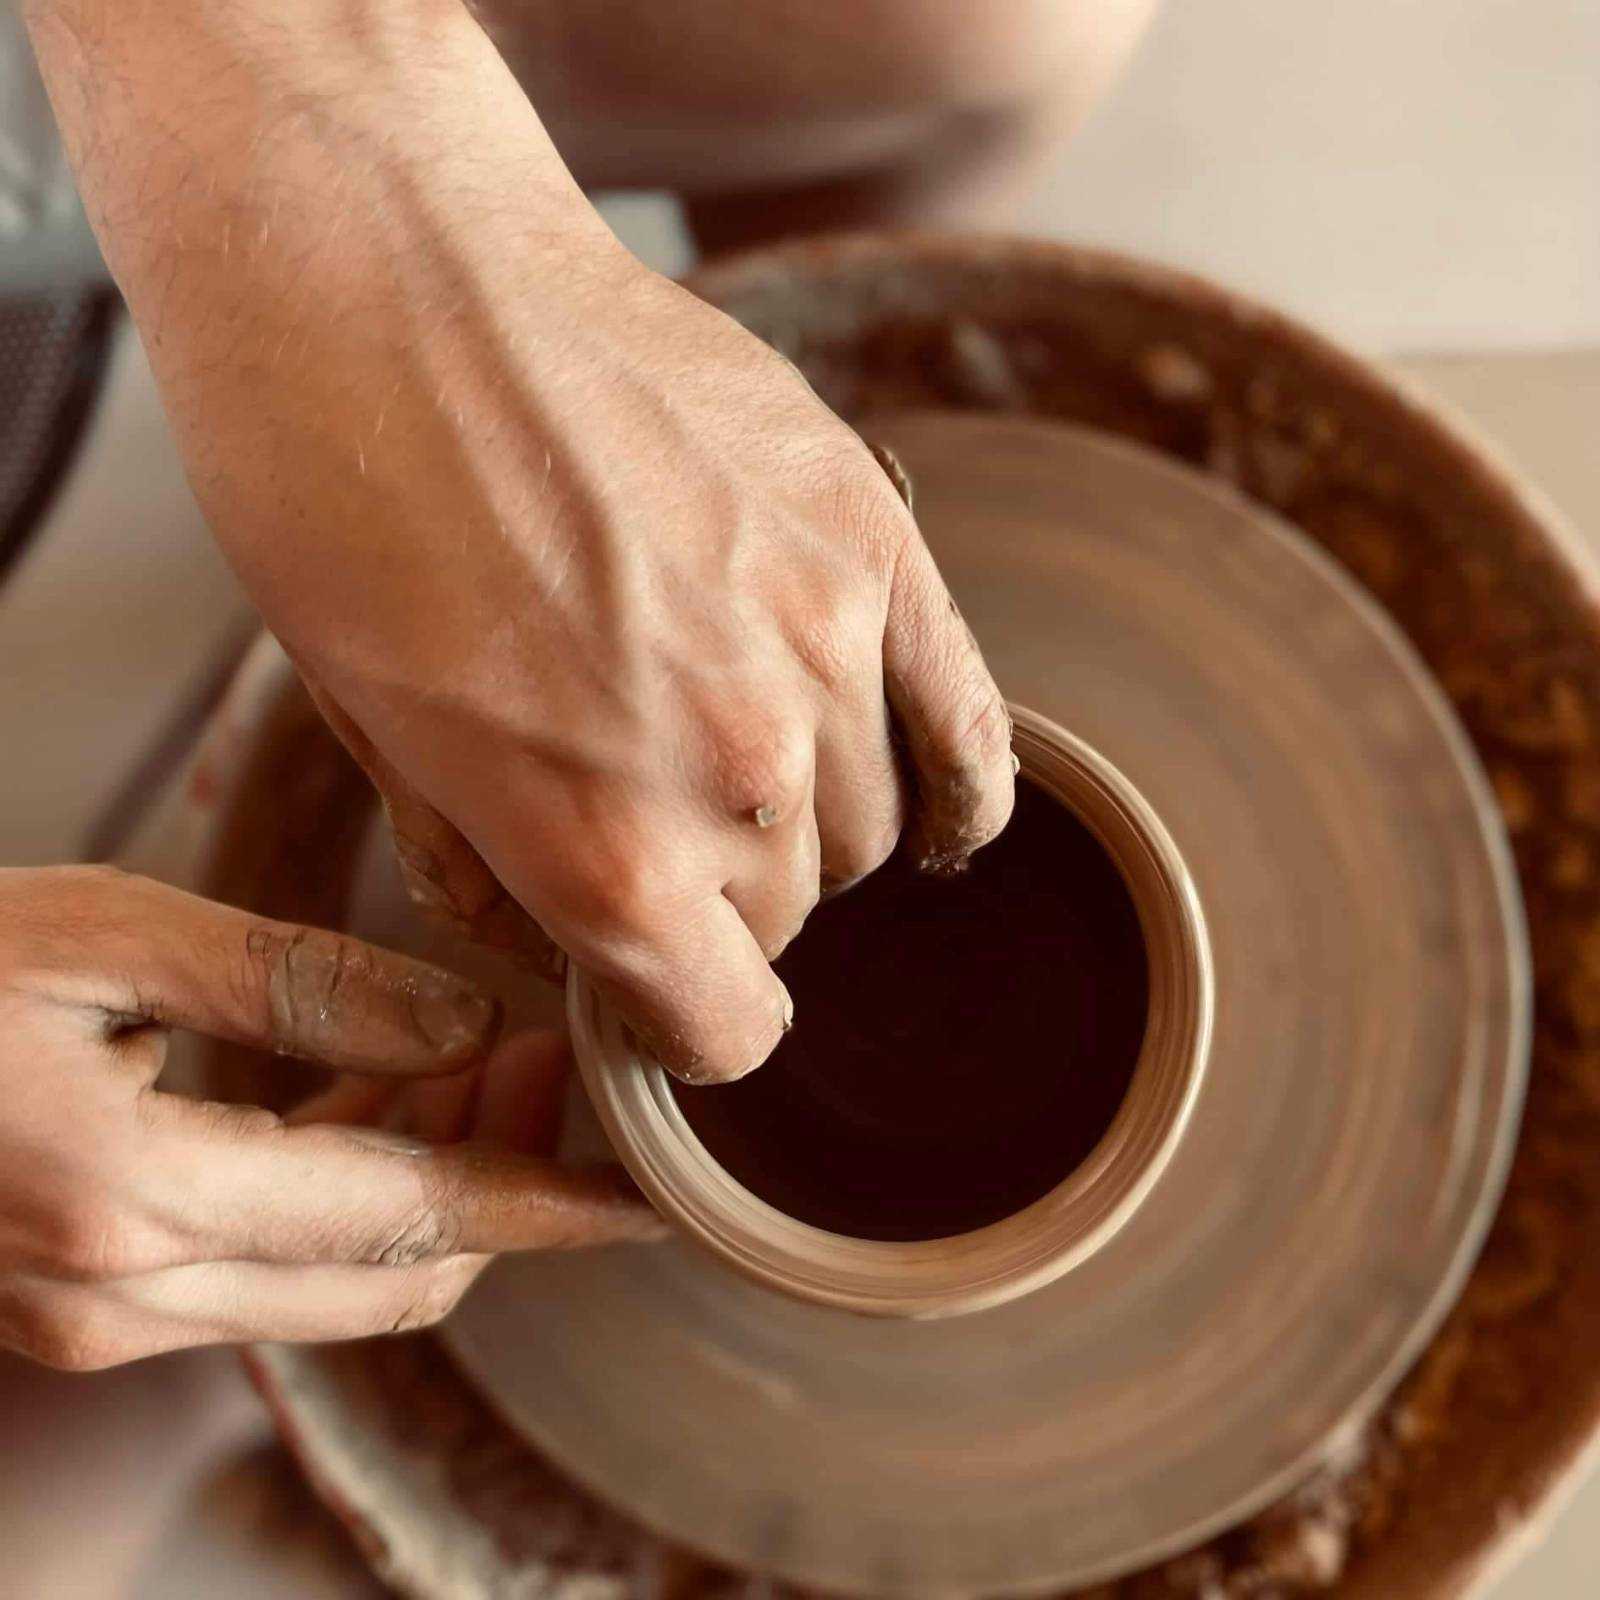 Pottery wheel experience - pottery